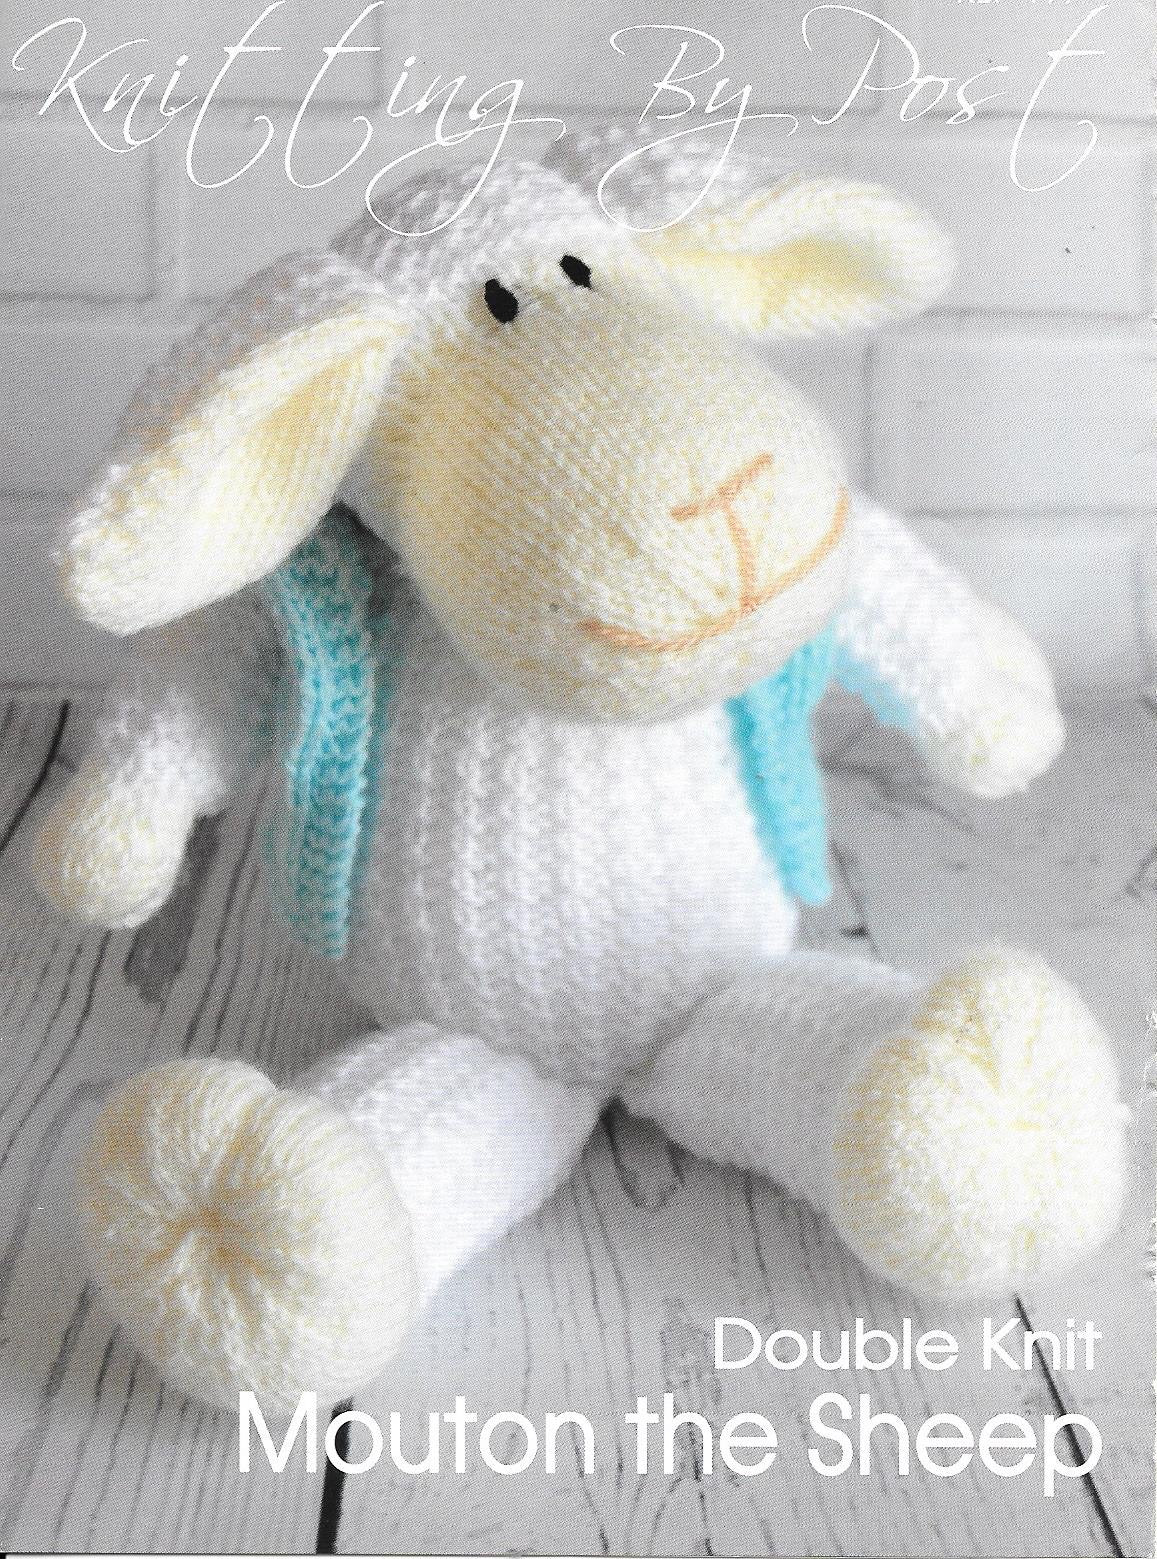 199 KBP199 Mouton the Sheep toy in DK knitting pattern